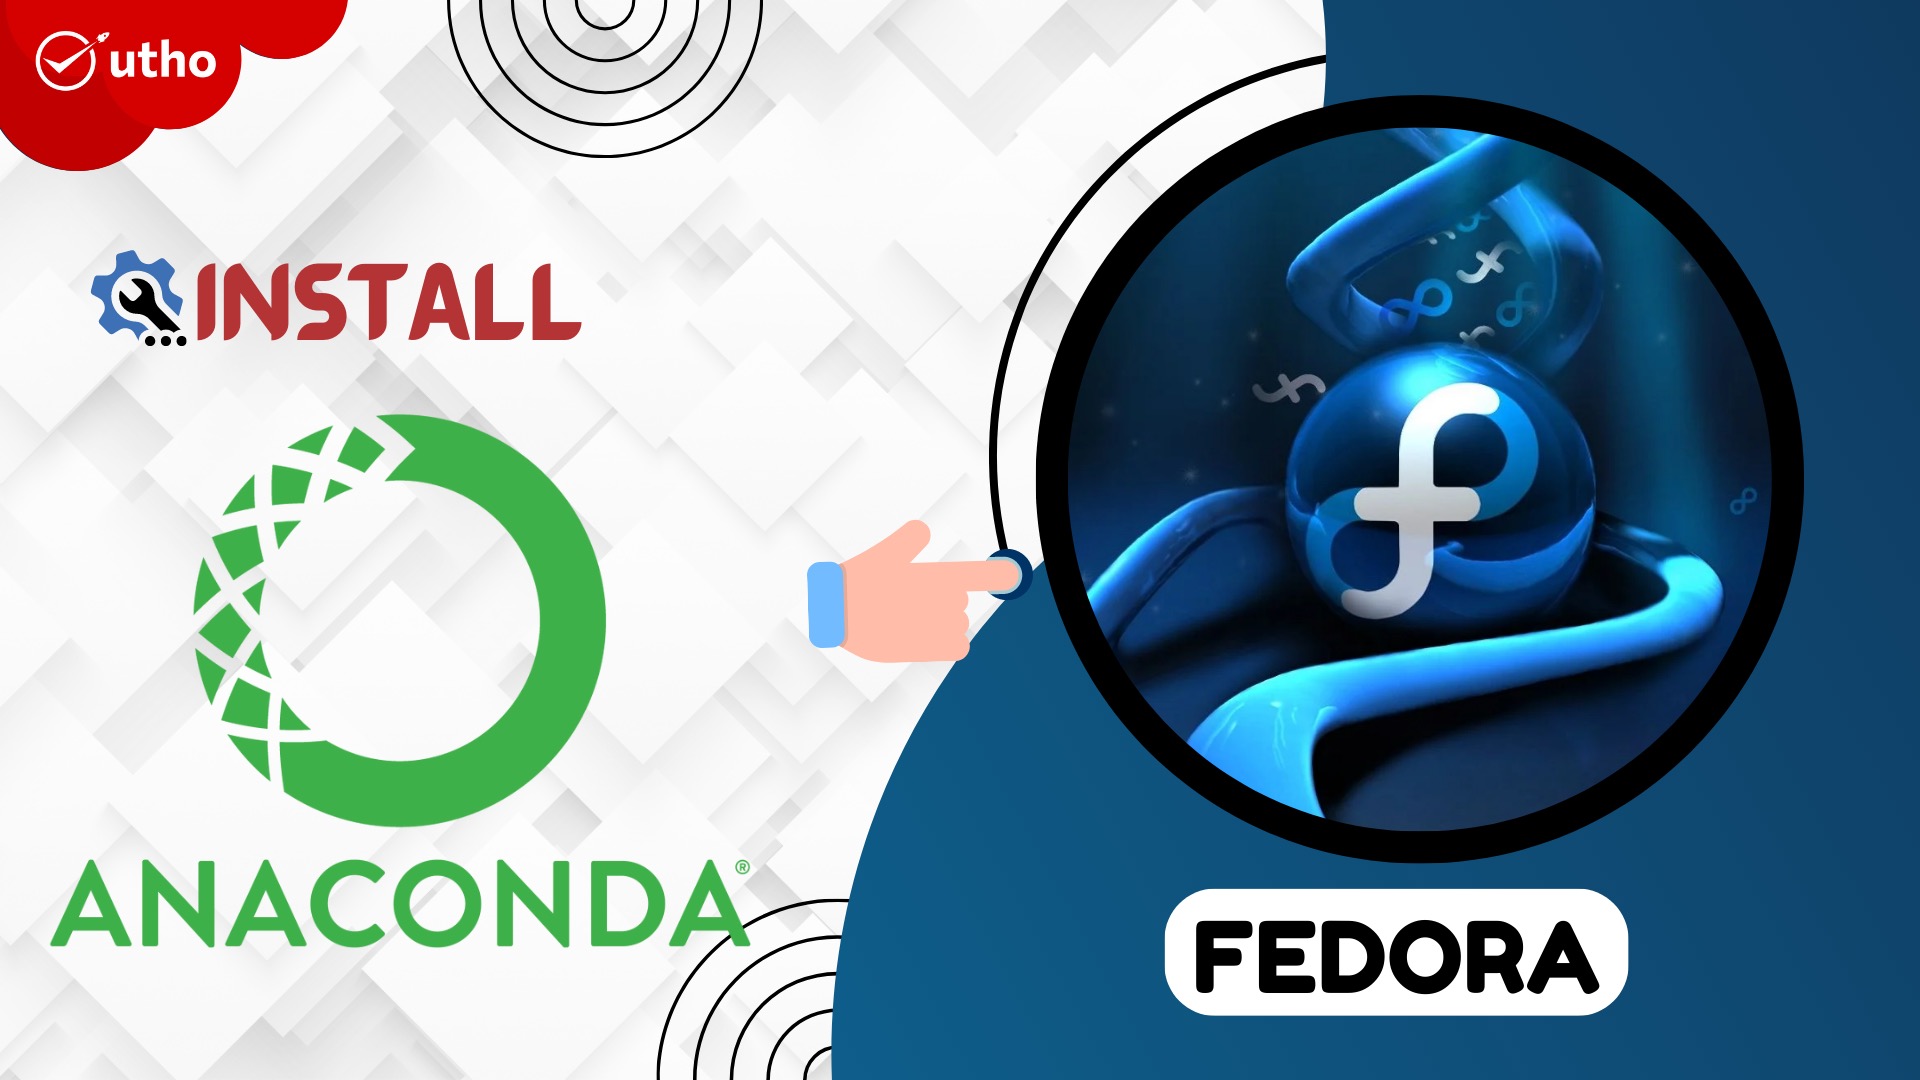 How to Install Anaconda on Fedora